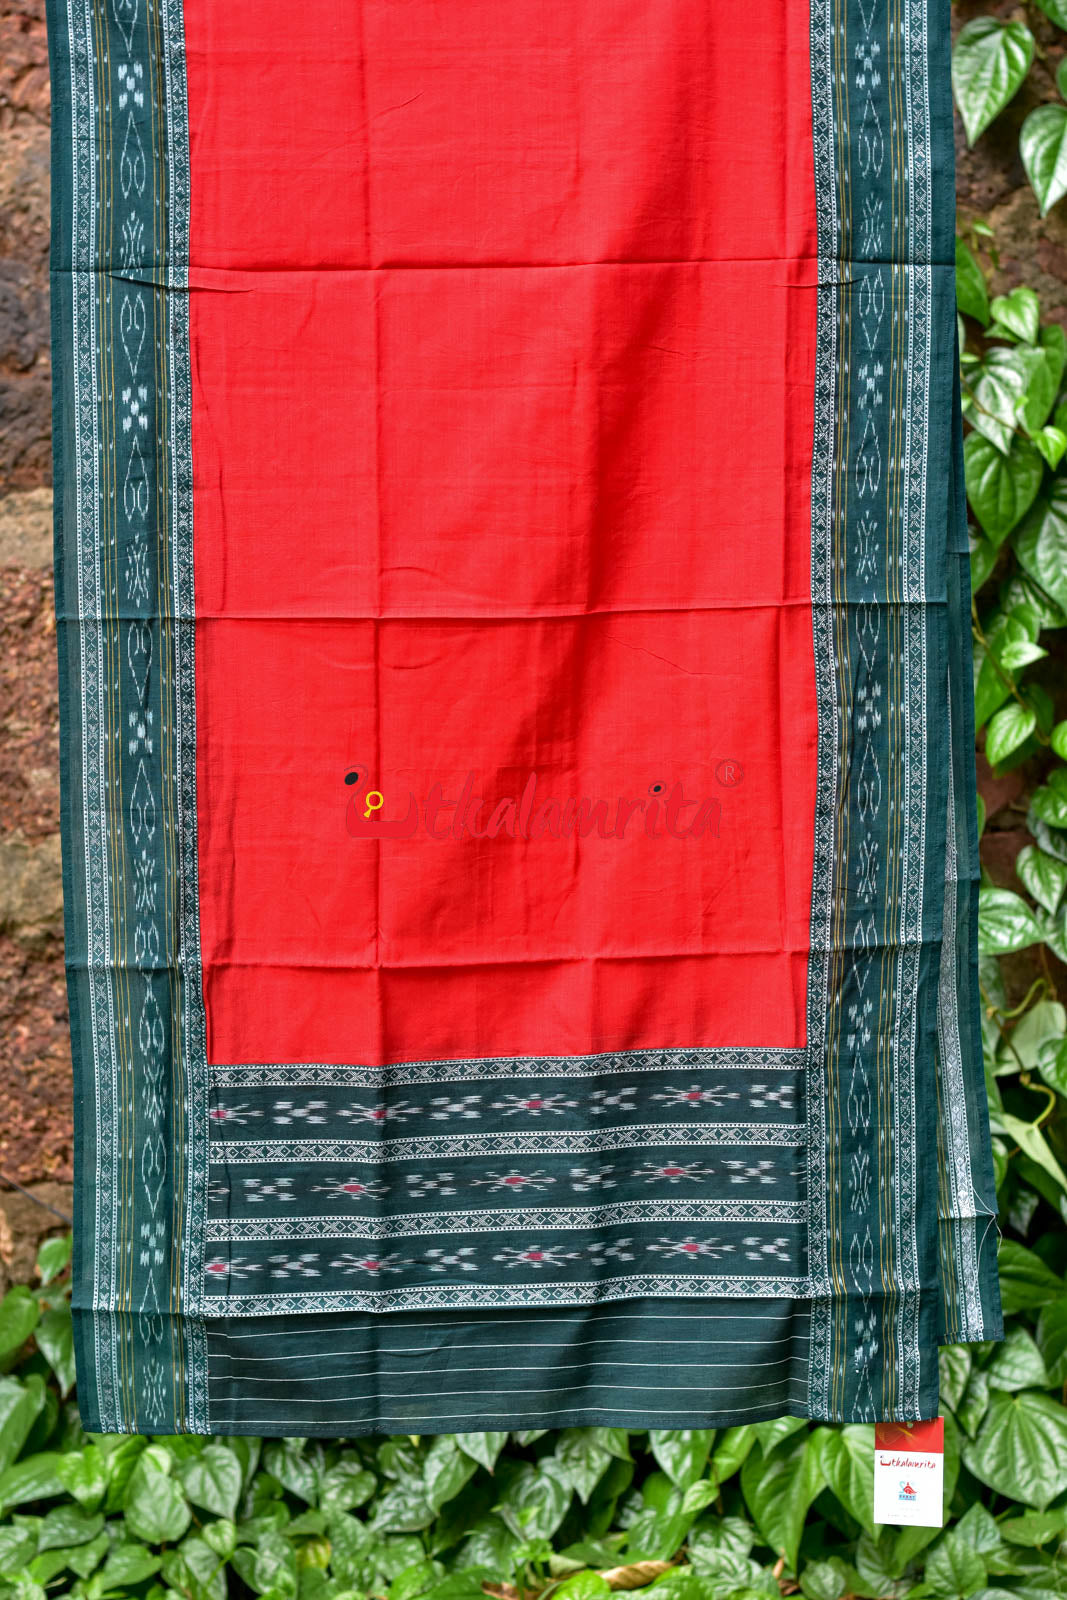 Basil Red Pasapali Long Flower Bandha Dress Set